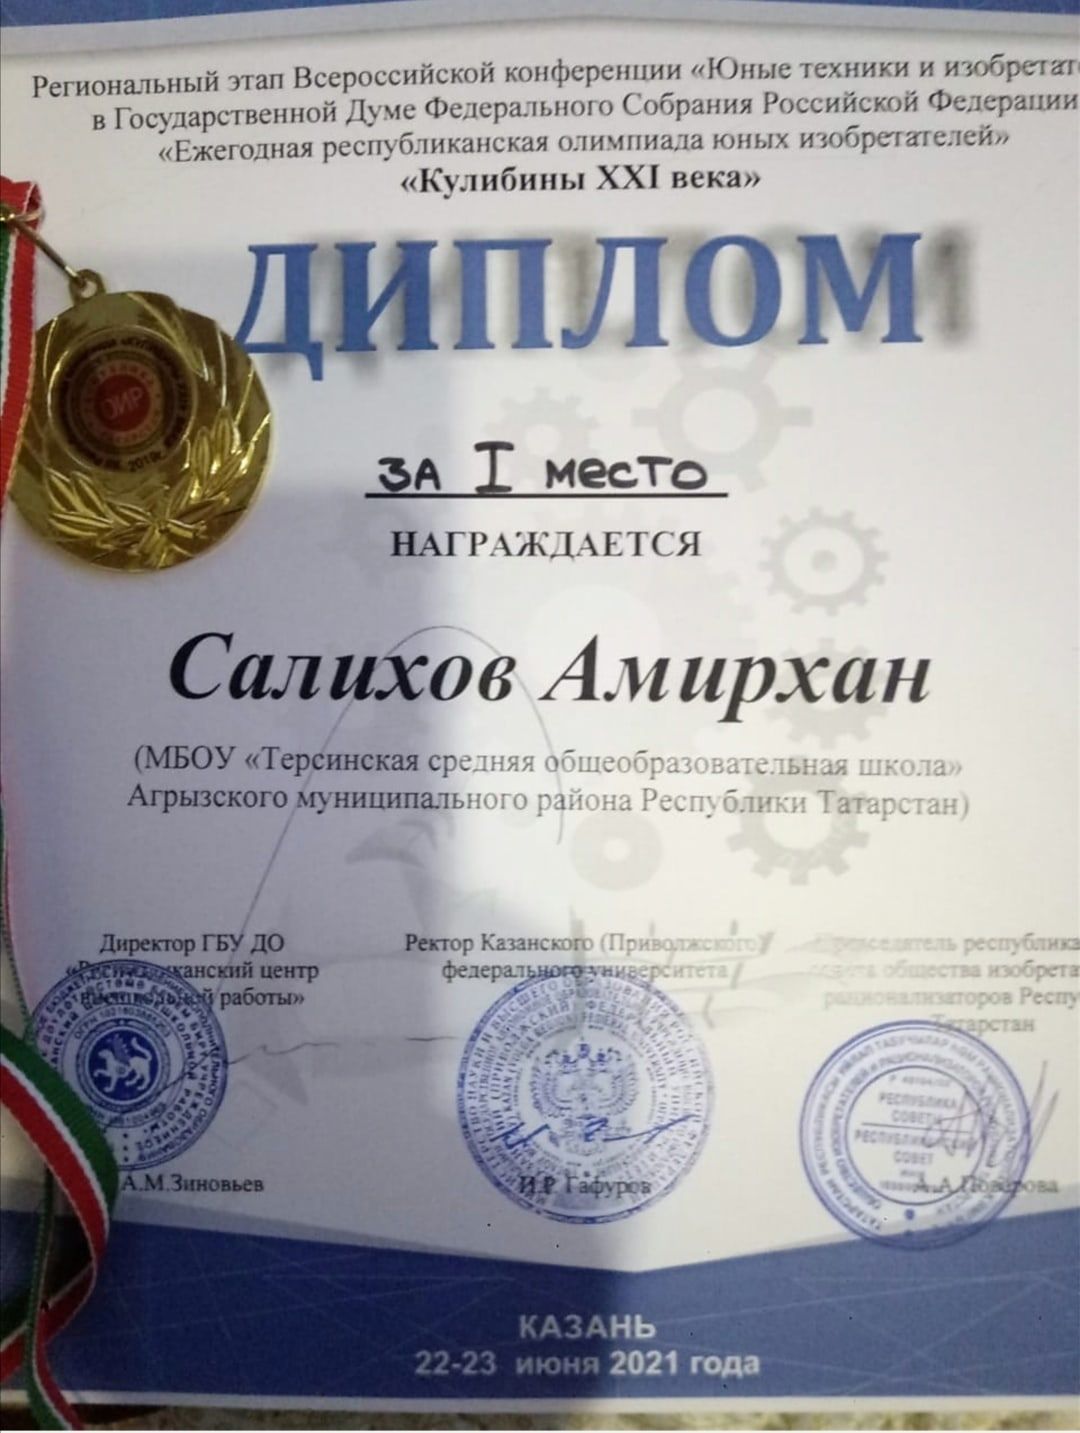 Салихов Амирхан занял 1 место в олимпиаде "Юные техники и изобретатели"